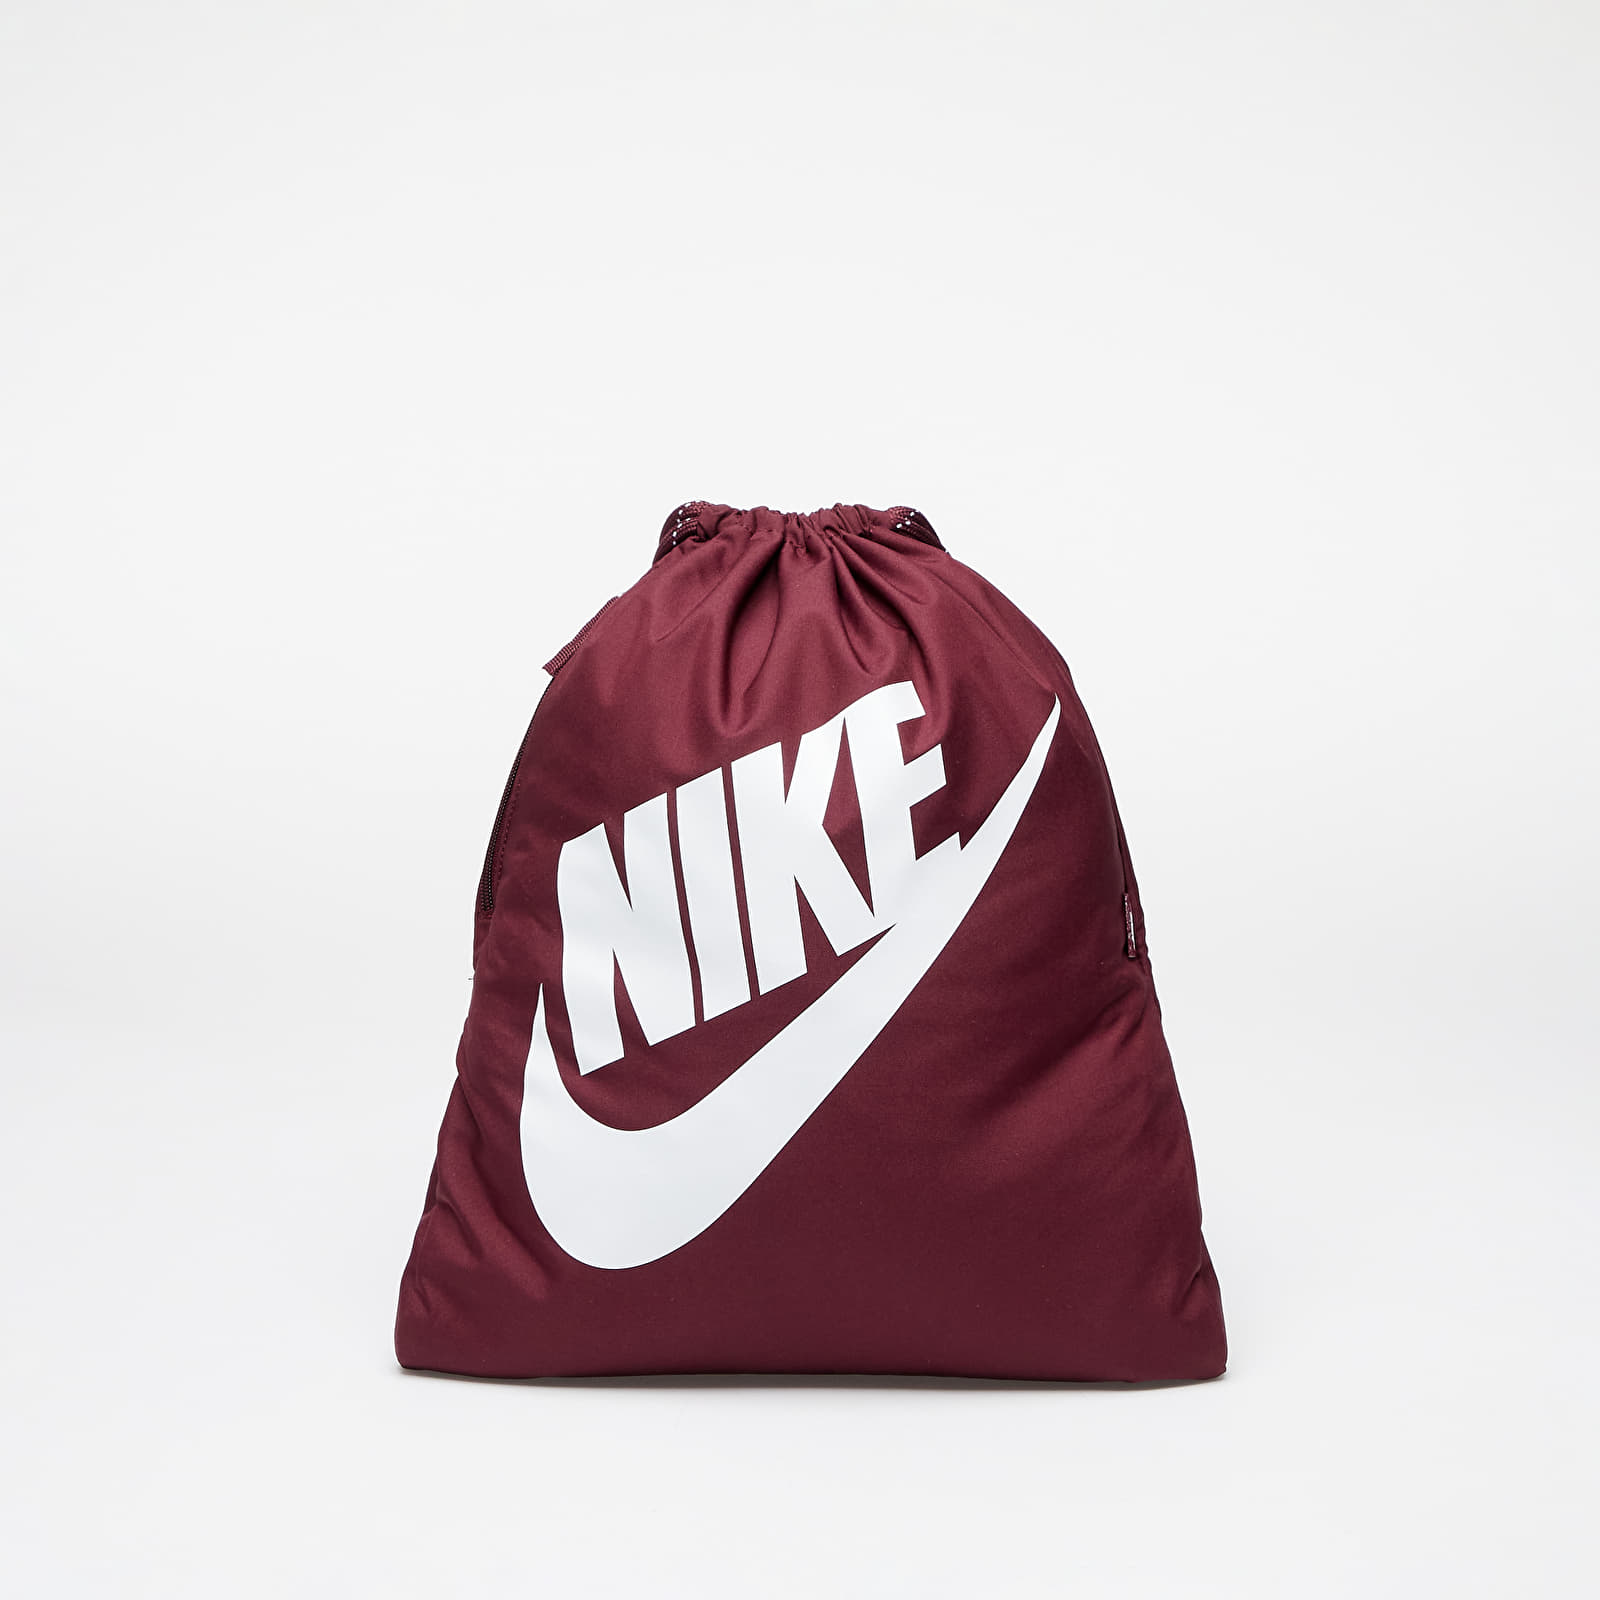 Nike Heritage Drawstring Bag Night Maroon/ White